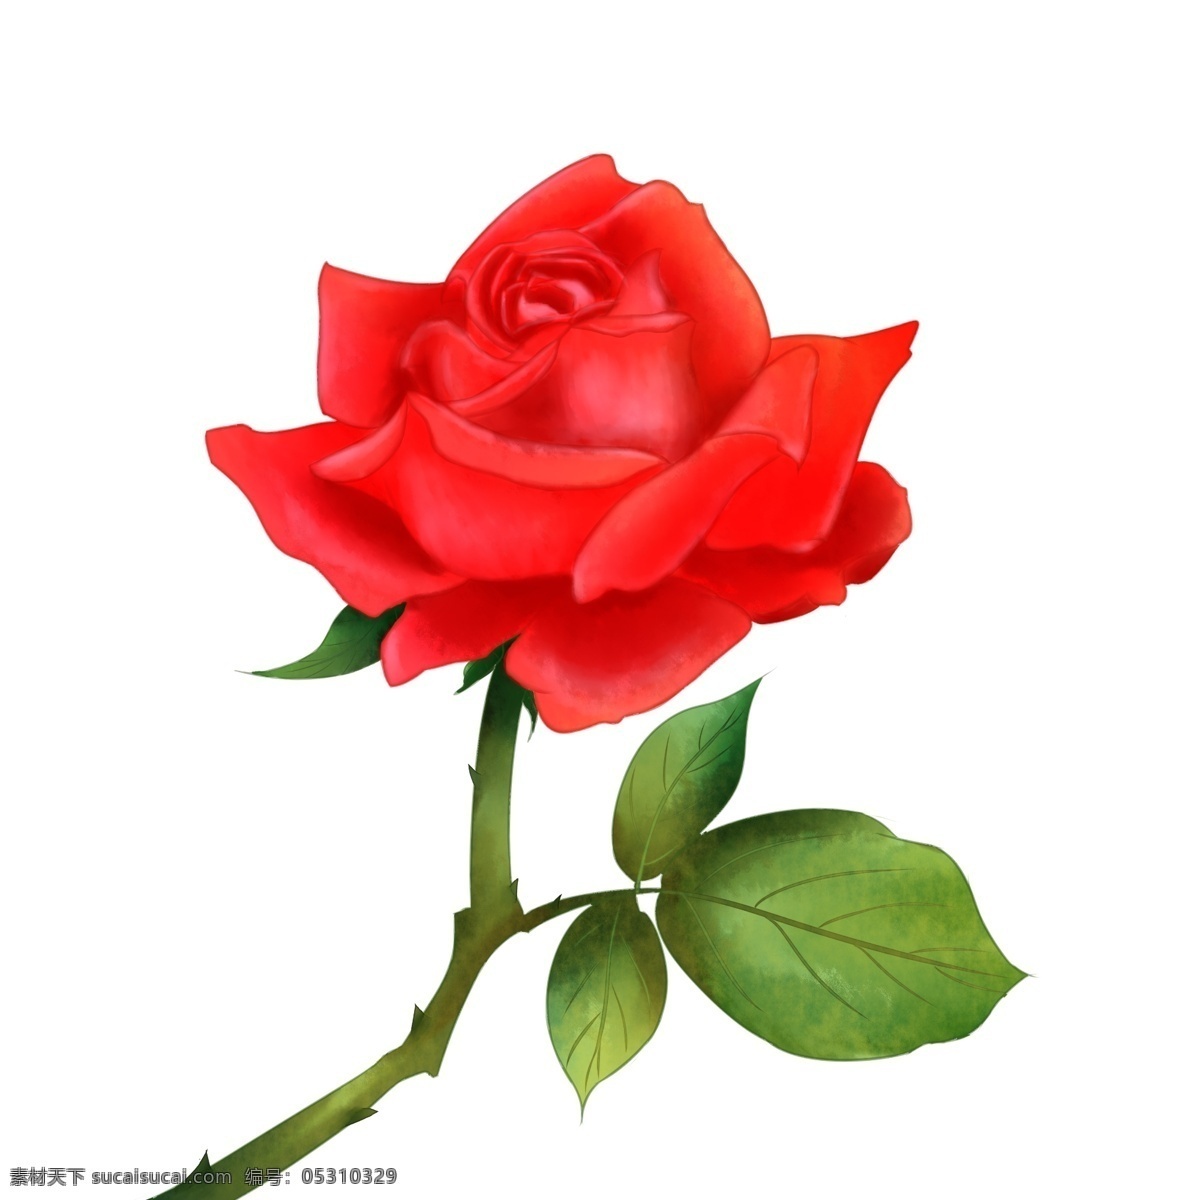 情人节 手绘 玫瑰 花卉 手绘花卉 情人节玫瑰 红色玫瑰 花朵 玫瑰花 手绘玫瑰